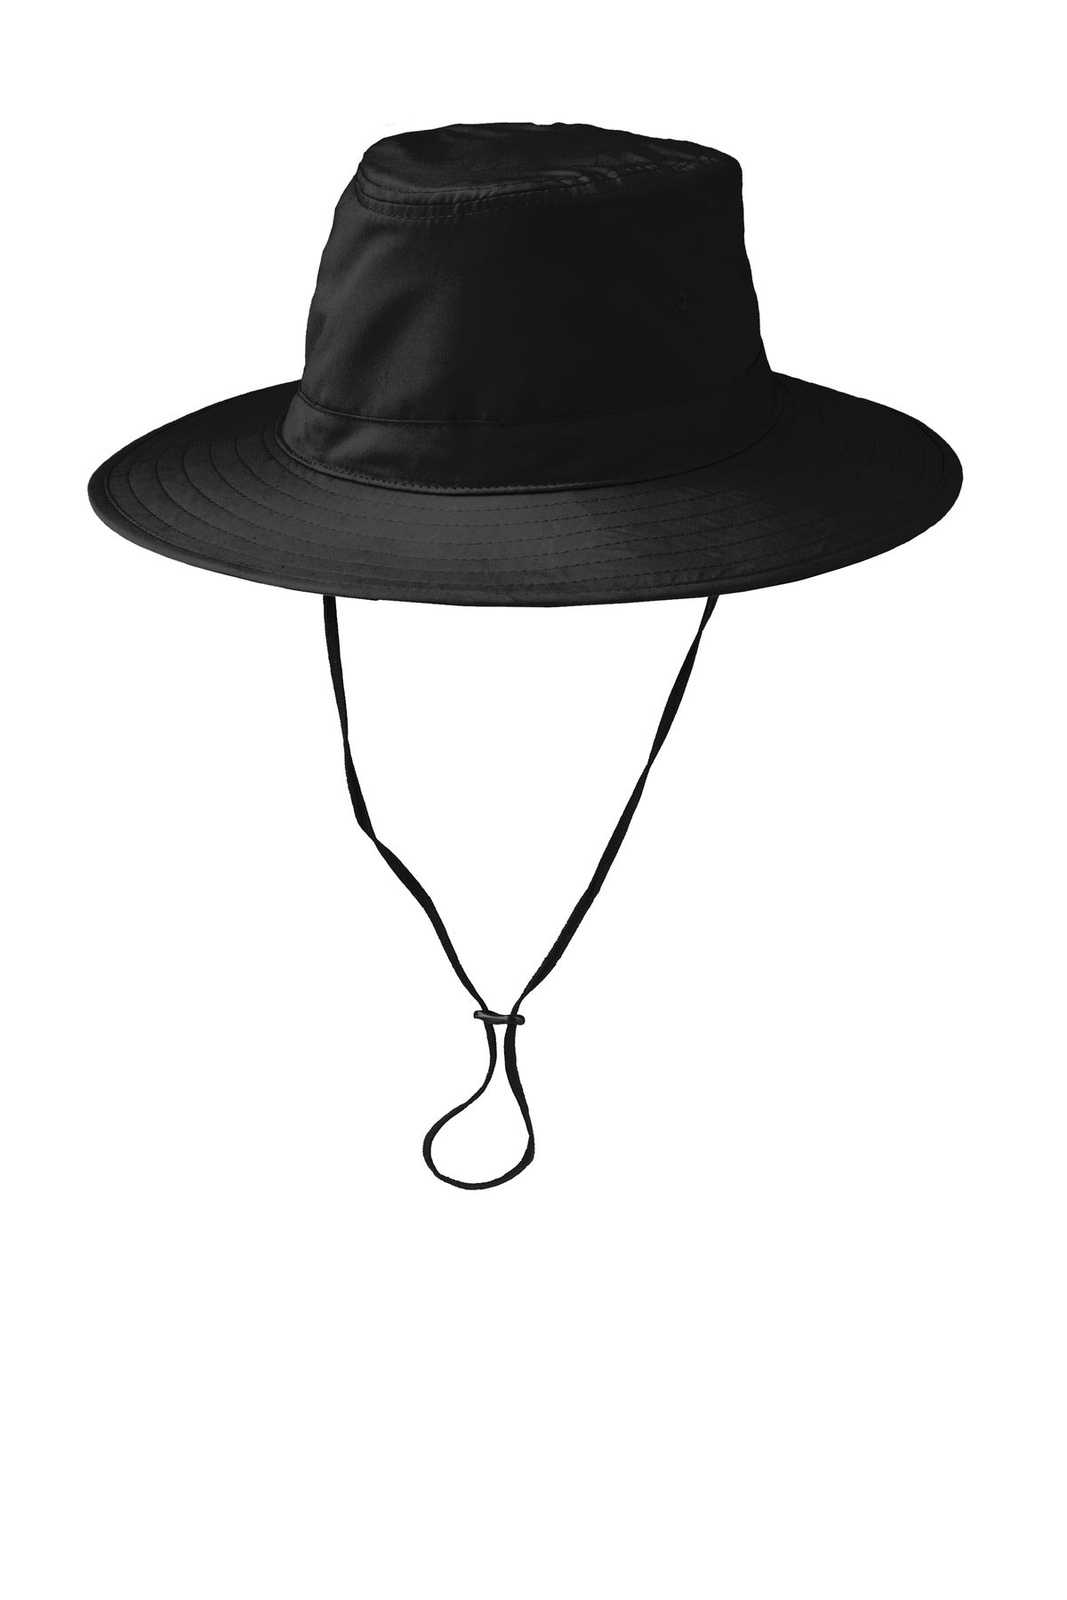 Port Authority C921 Lifestyle Brim Hat - Black - HIT a Double - 1